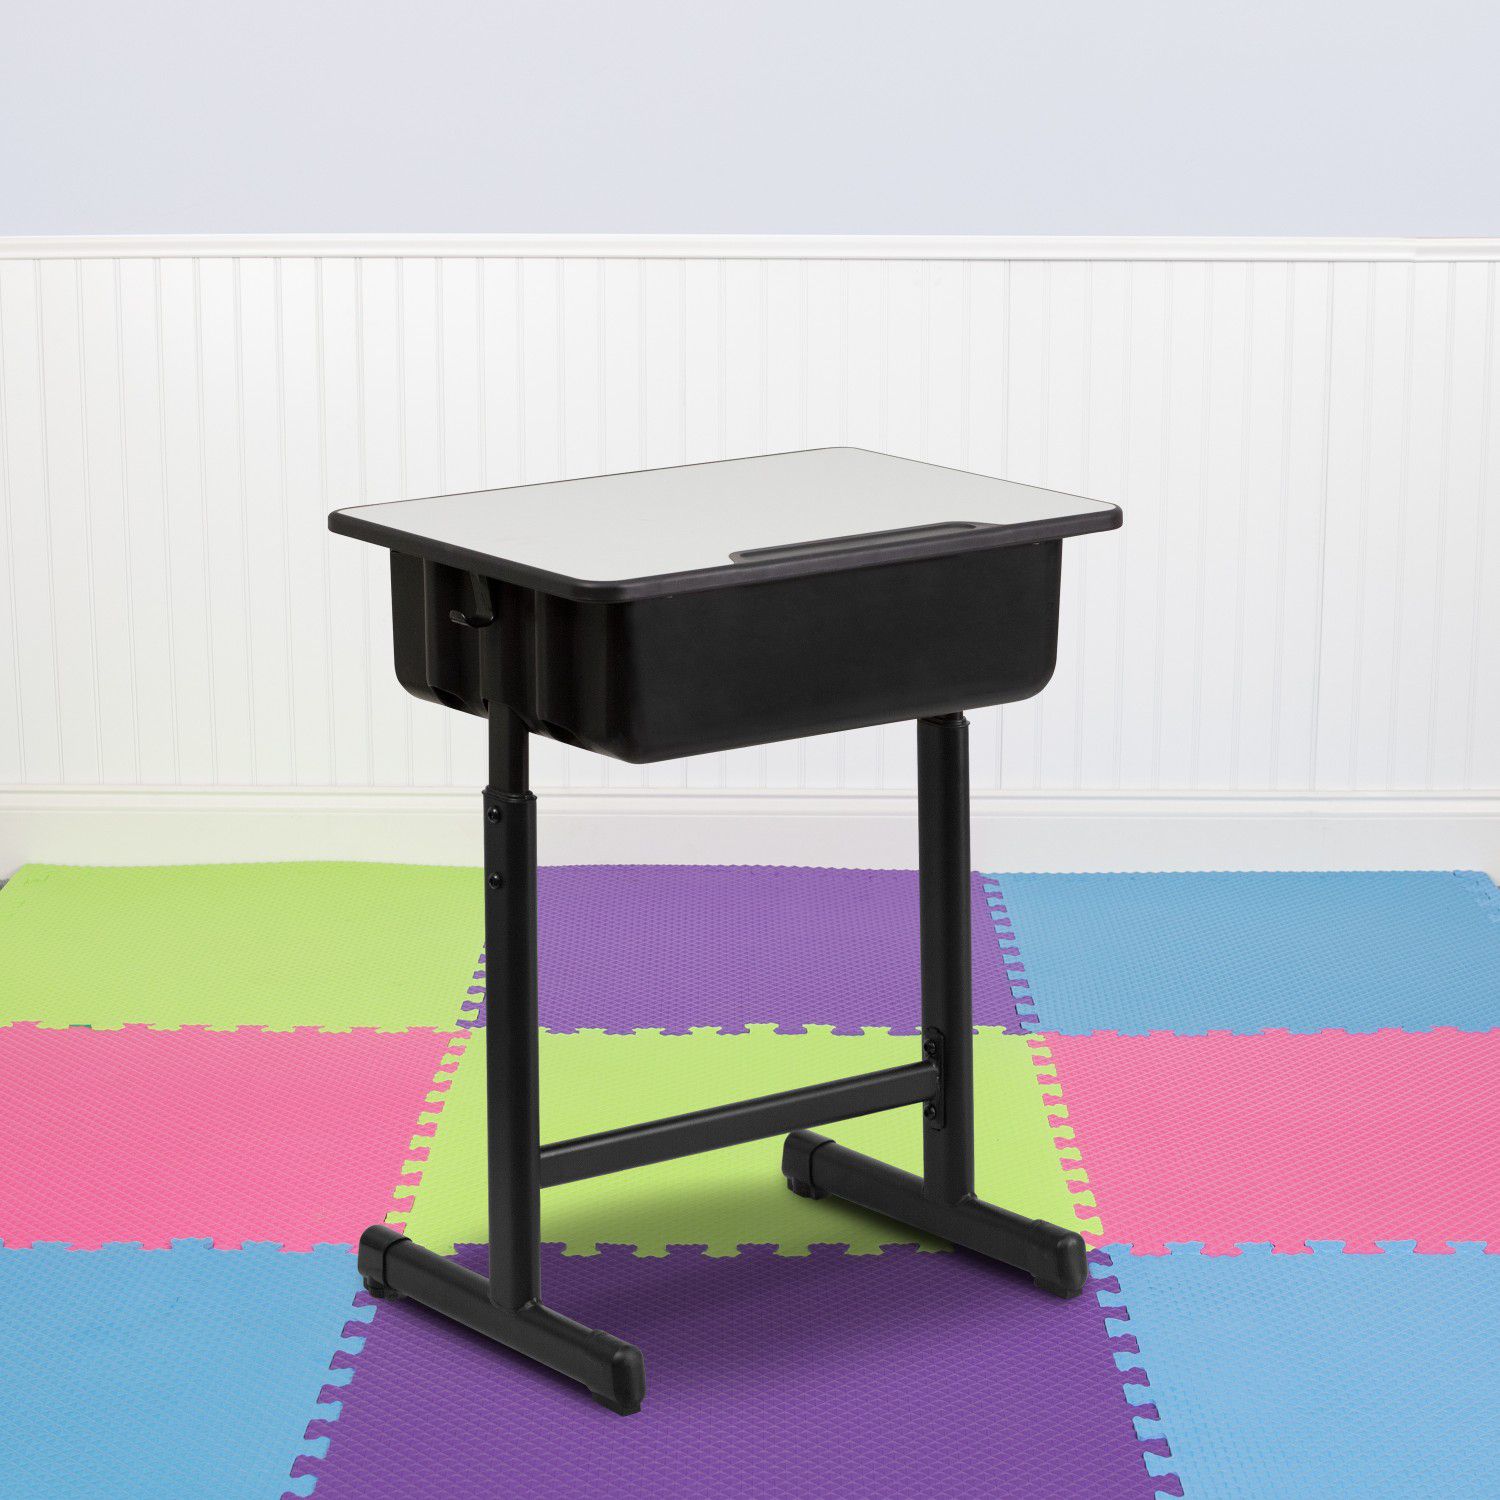 Desk with Grey Top and Adjustable Height Black Pedestal Frame